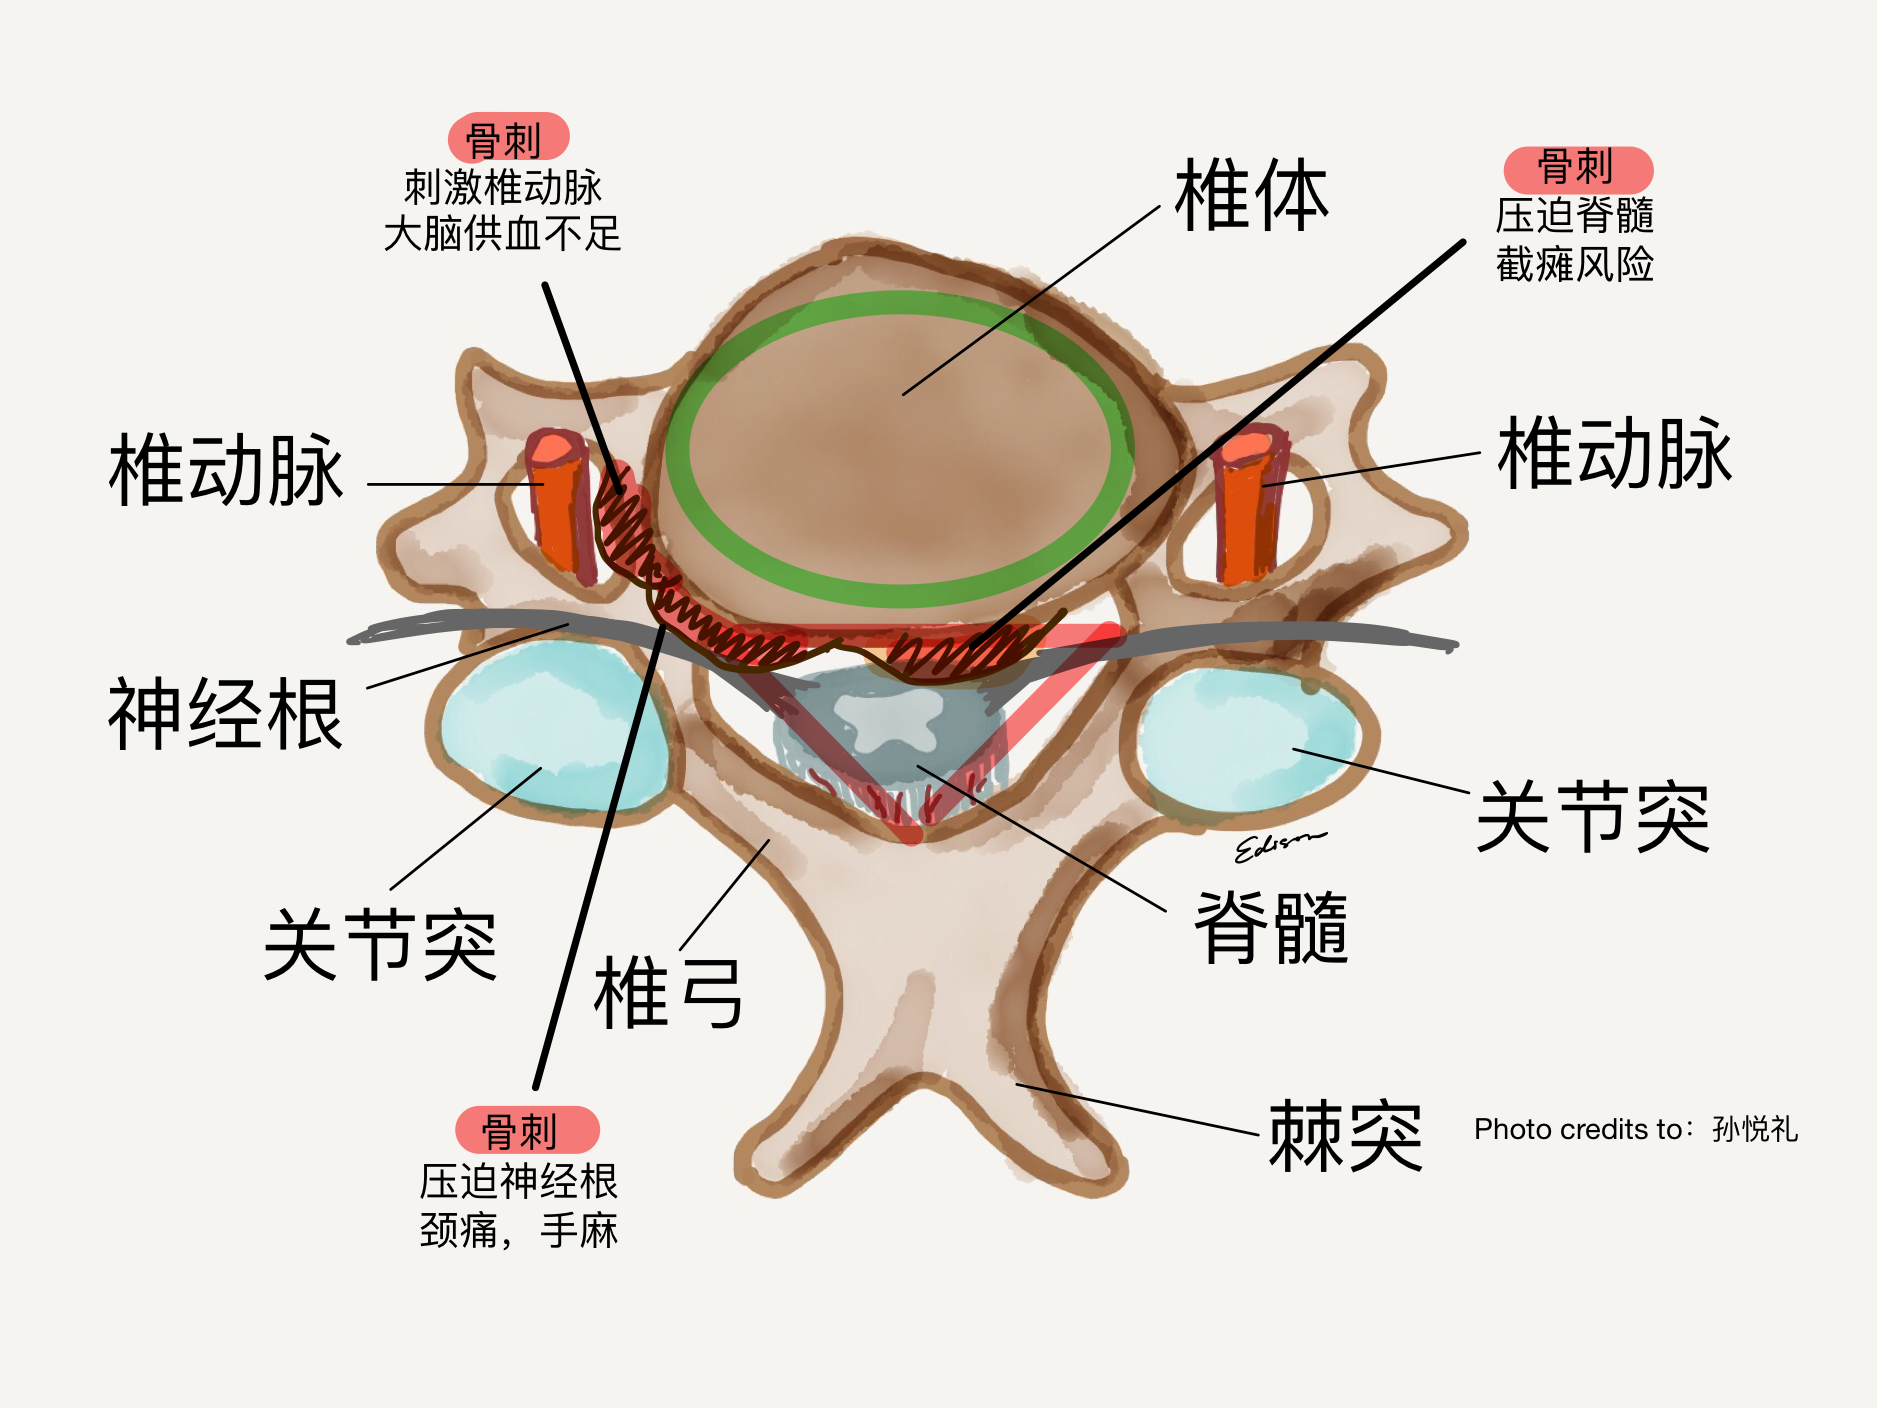 椎骨间的连接结构图图片